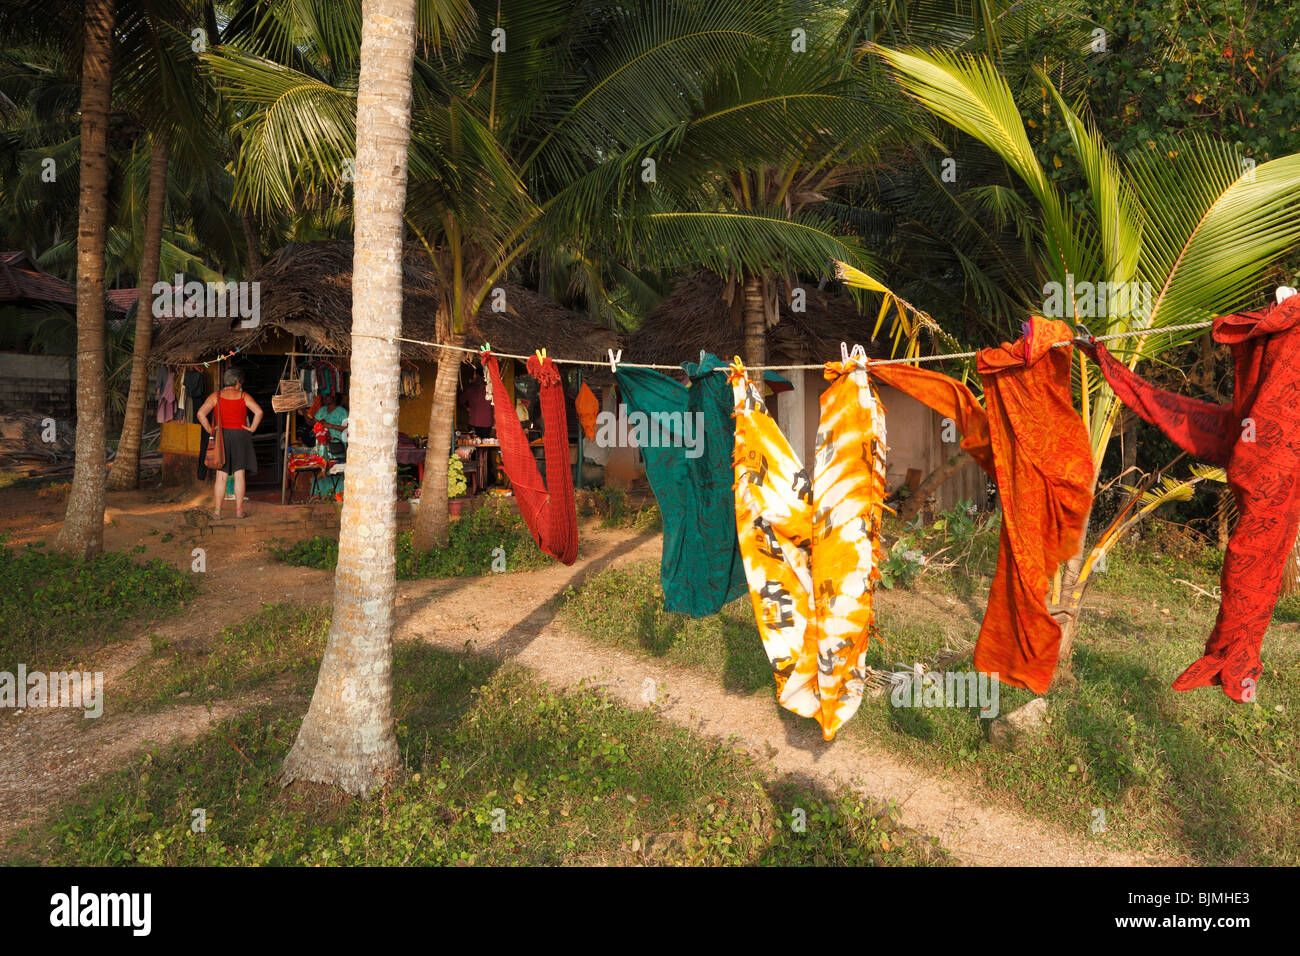 Stoffe, die an einer Wäscheleine hängen, Nähen Hütte unter Palmen, südlich von Kovalam, Kerala Zustand, Indien, Asien Stockfoto